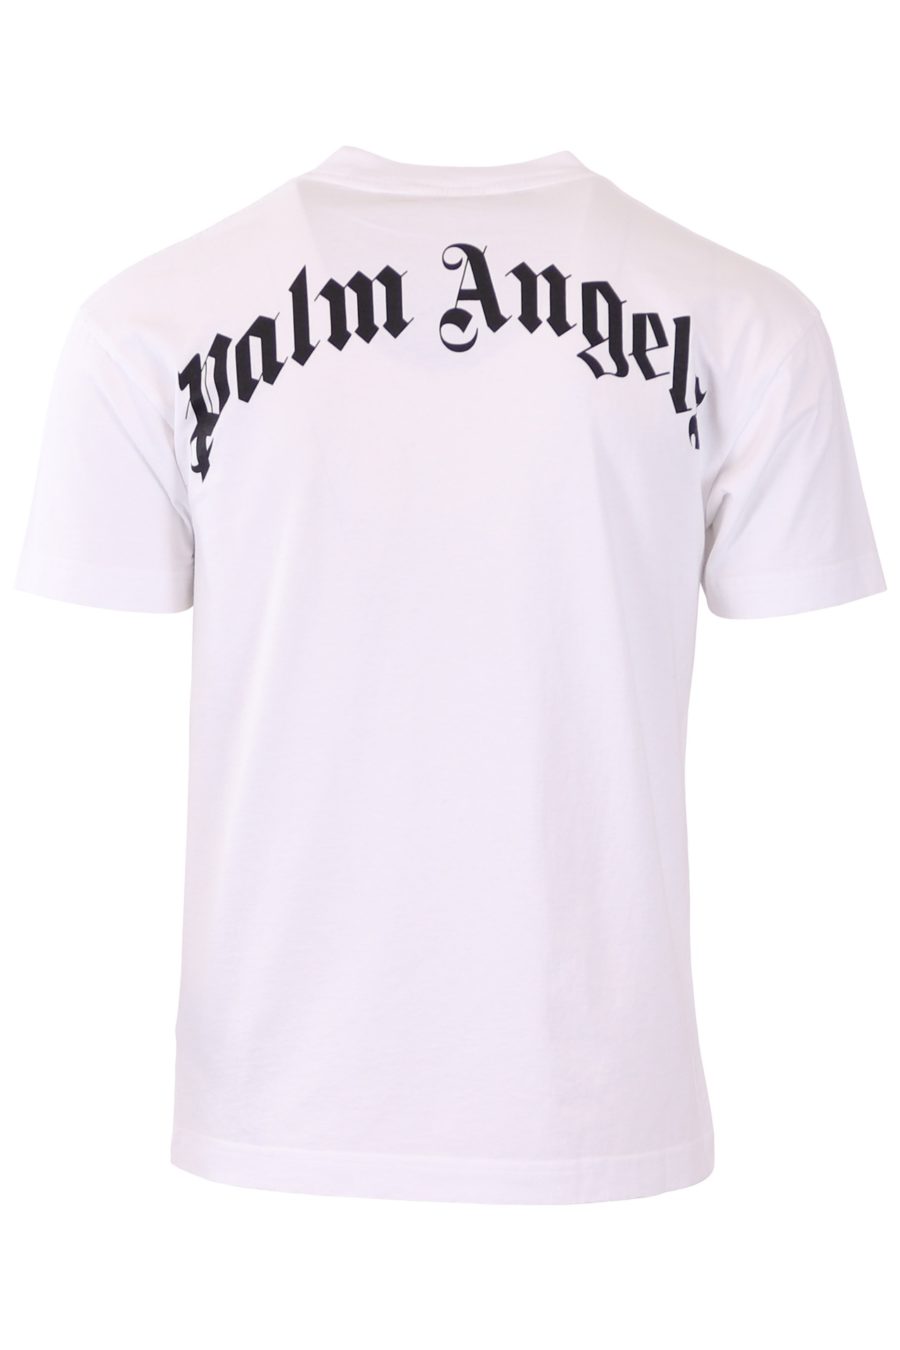 Palm Angels T-shirt branca com urso - 48f71536dc23293e439e3f8295cbefd337e86596